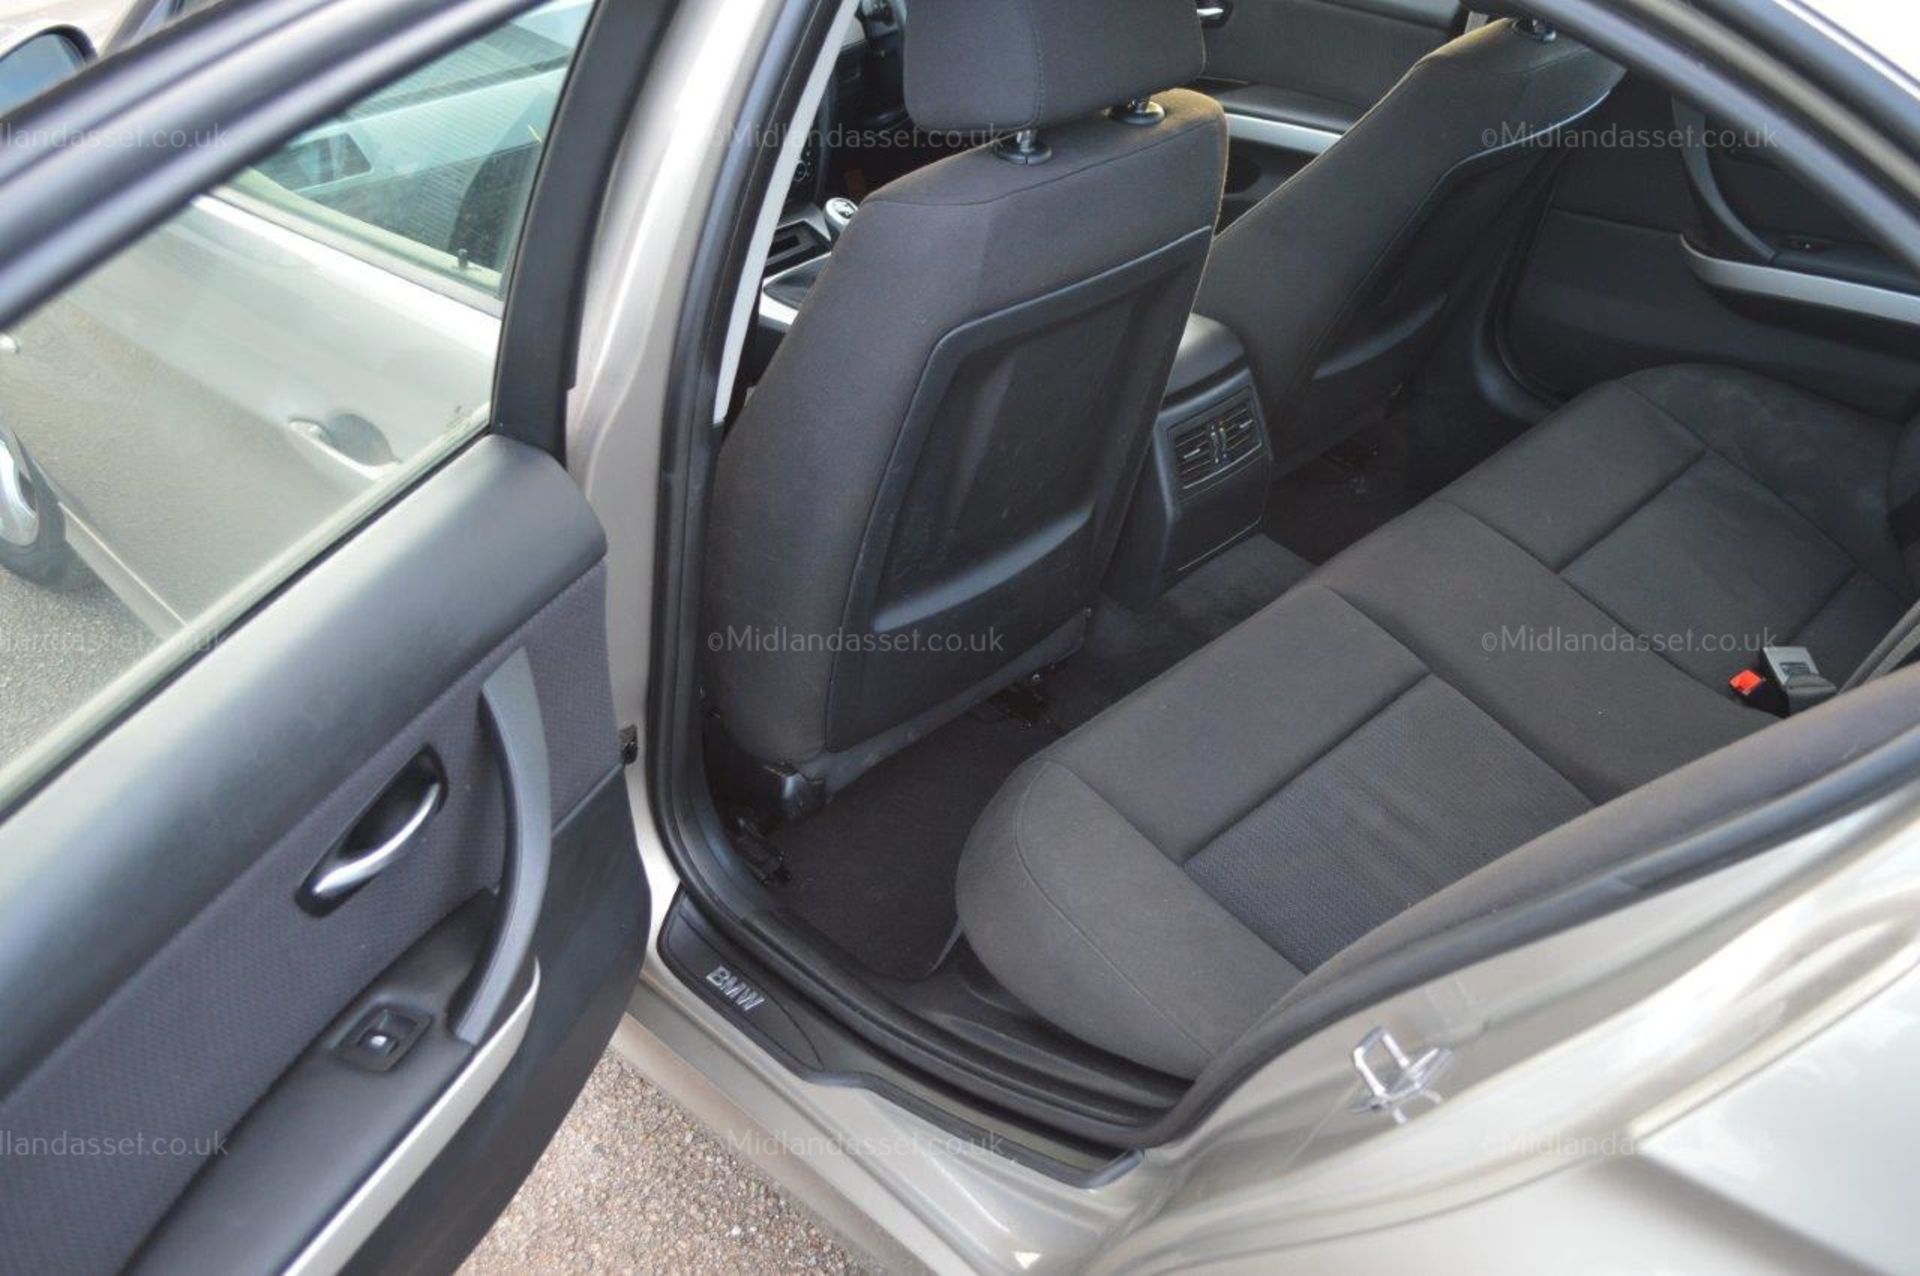 2010/10 REG BMW 320D EFFICIENCY DYNAMICS 4 DOOR SALOON *NO VAT* - Image 17 of 22